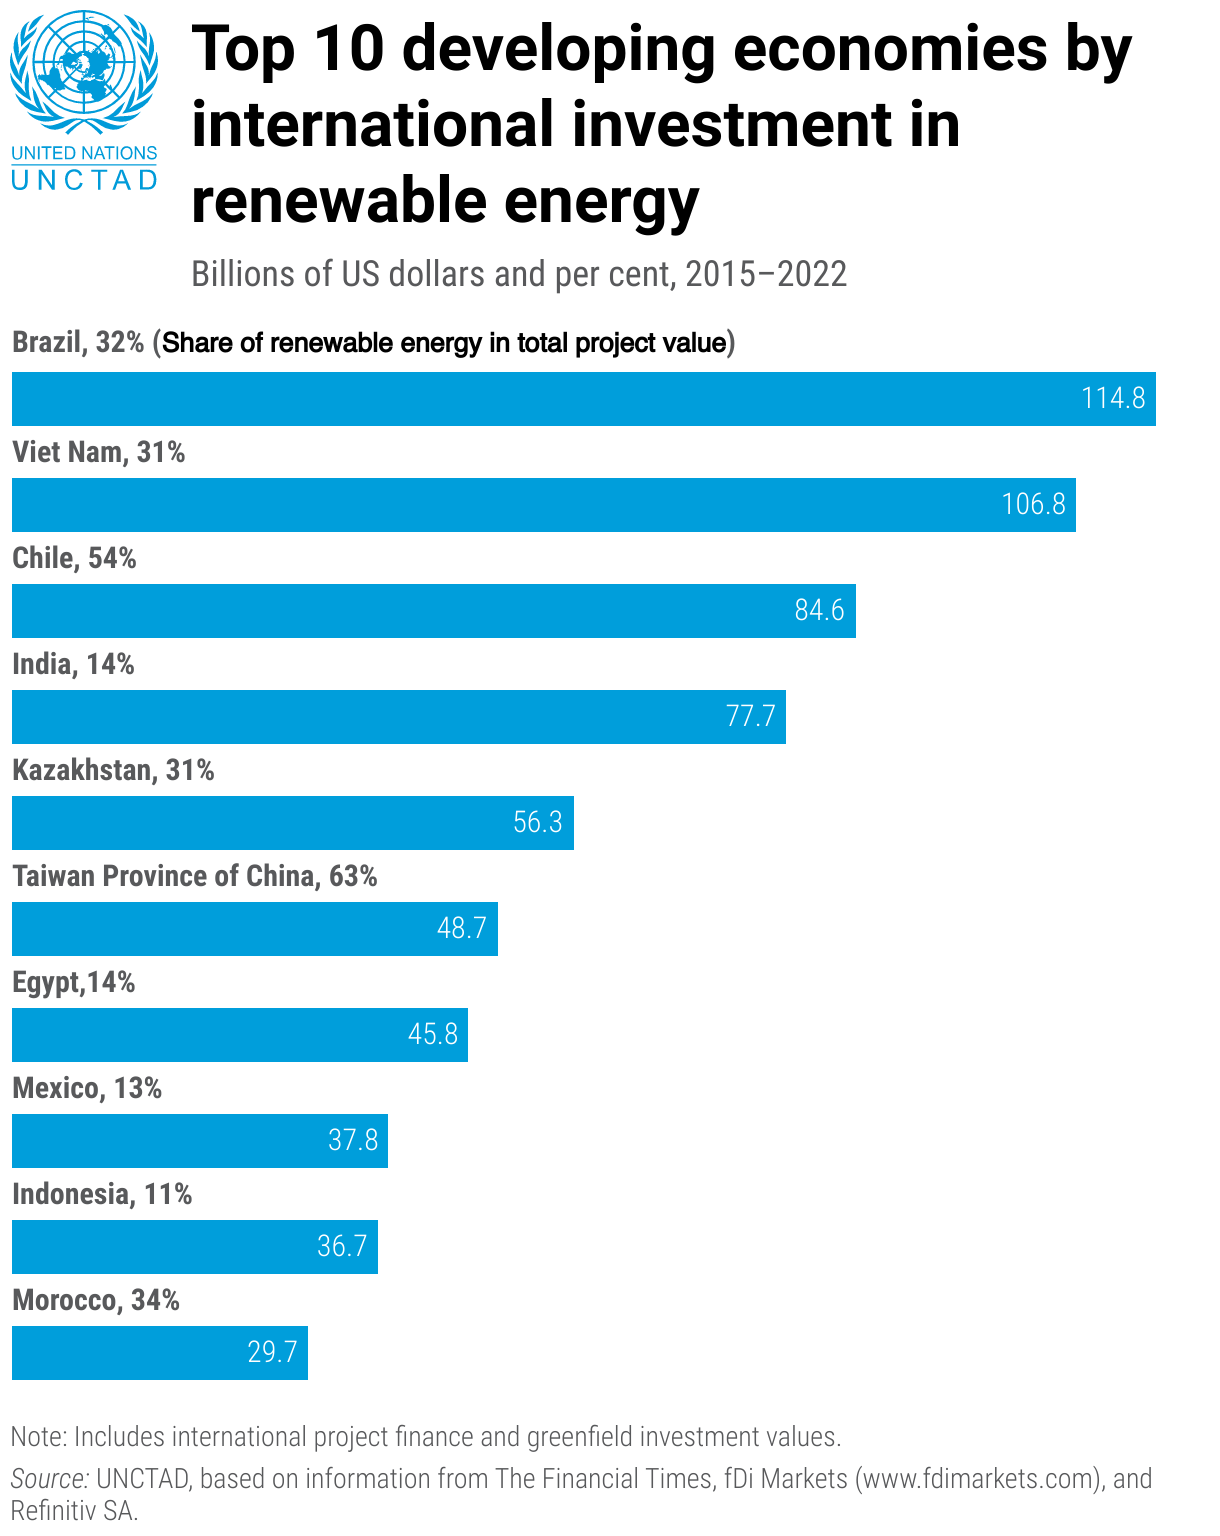 Top 10 nền kinh tế nhận được đầu tư quốc tế vào năng lượng tái tạo